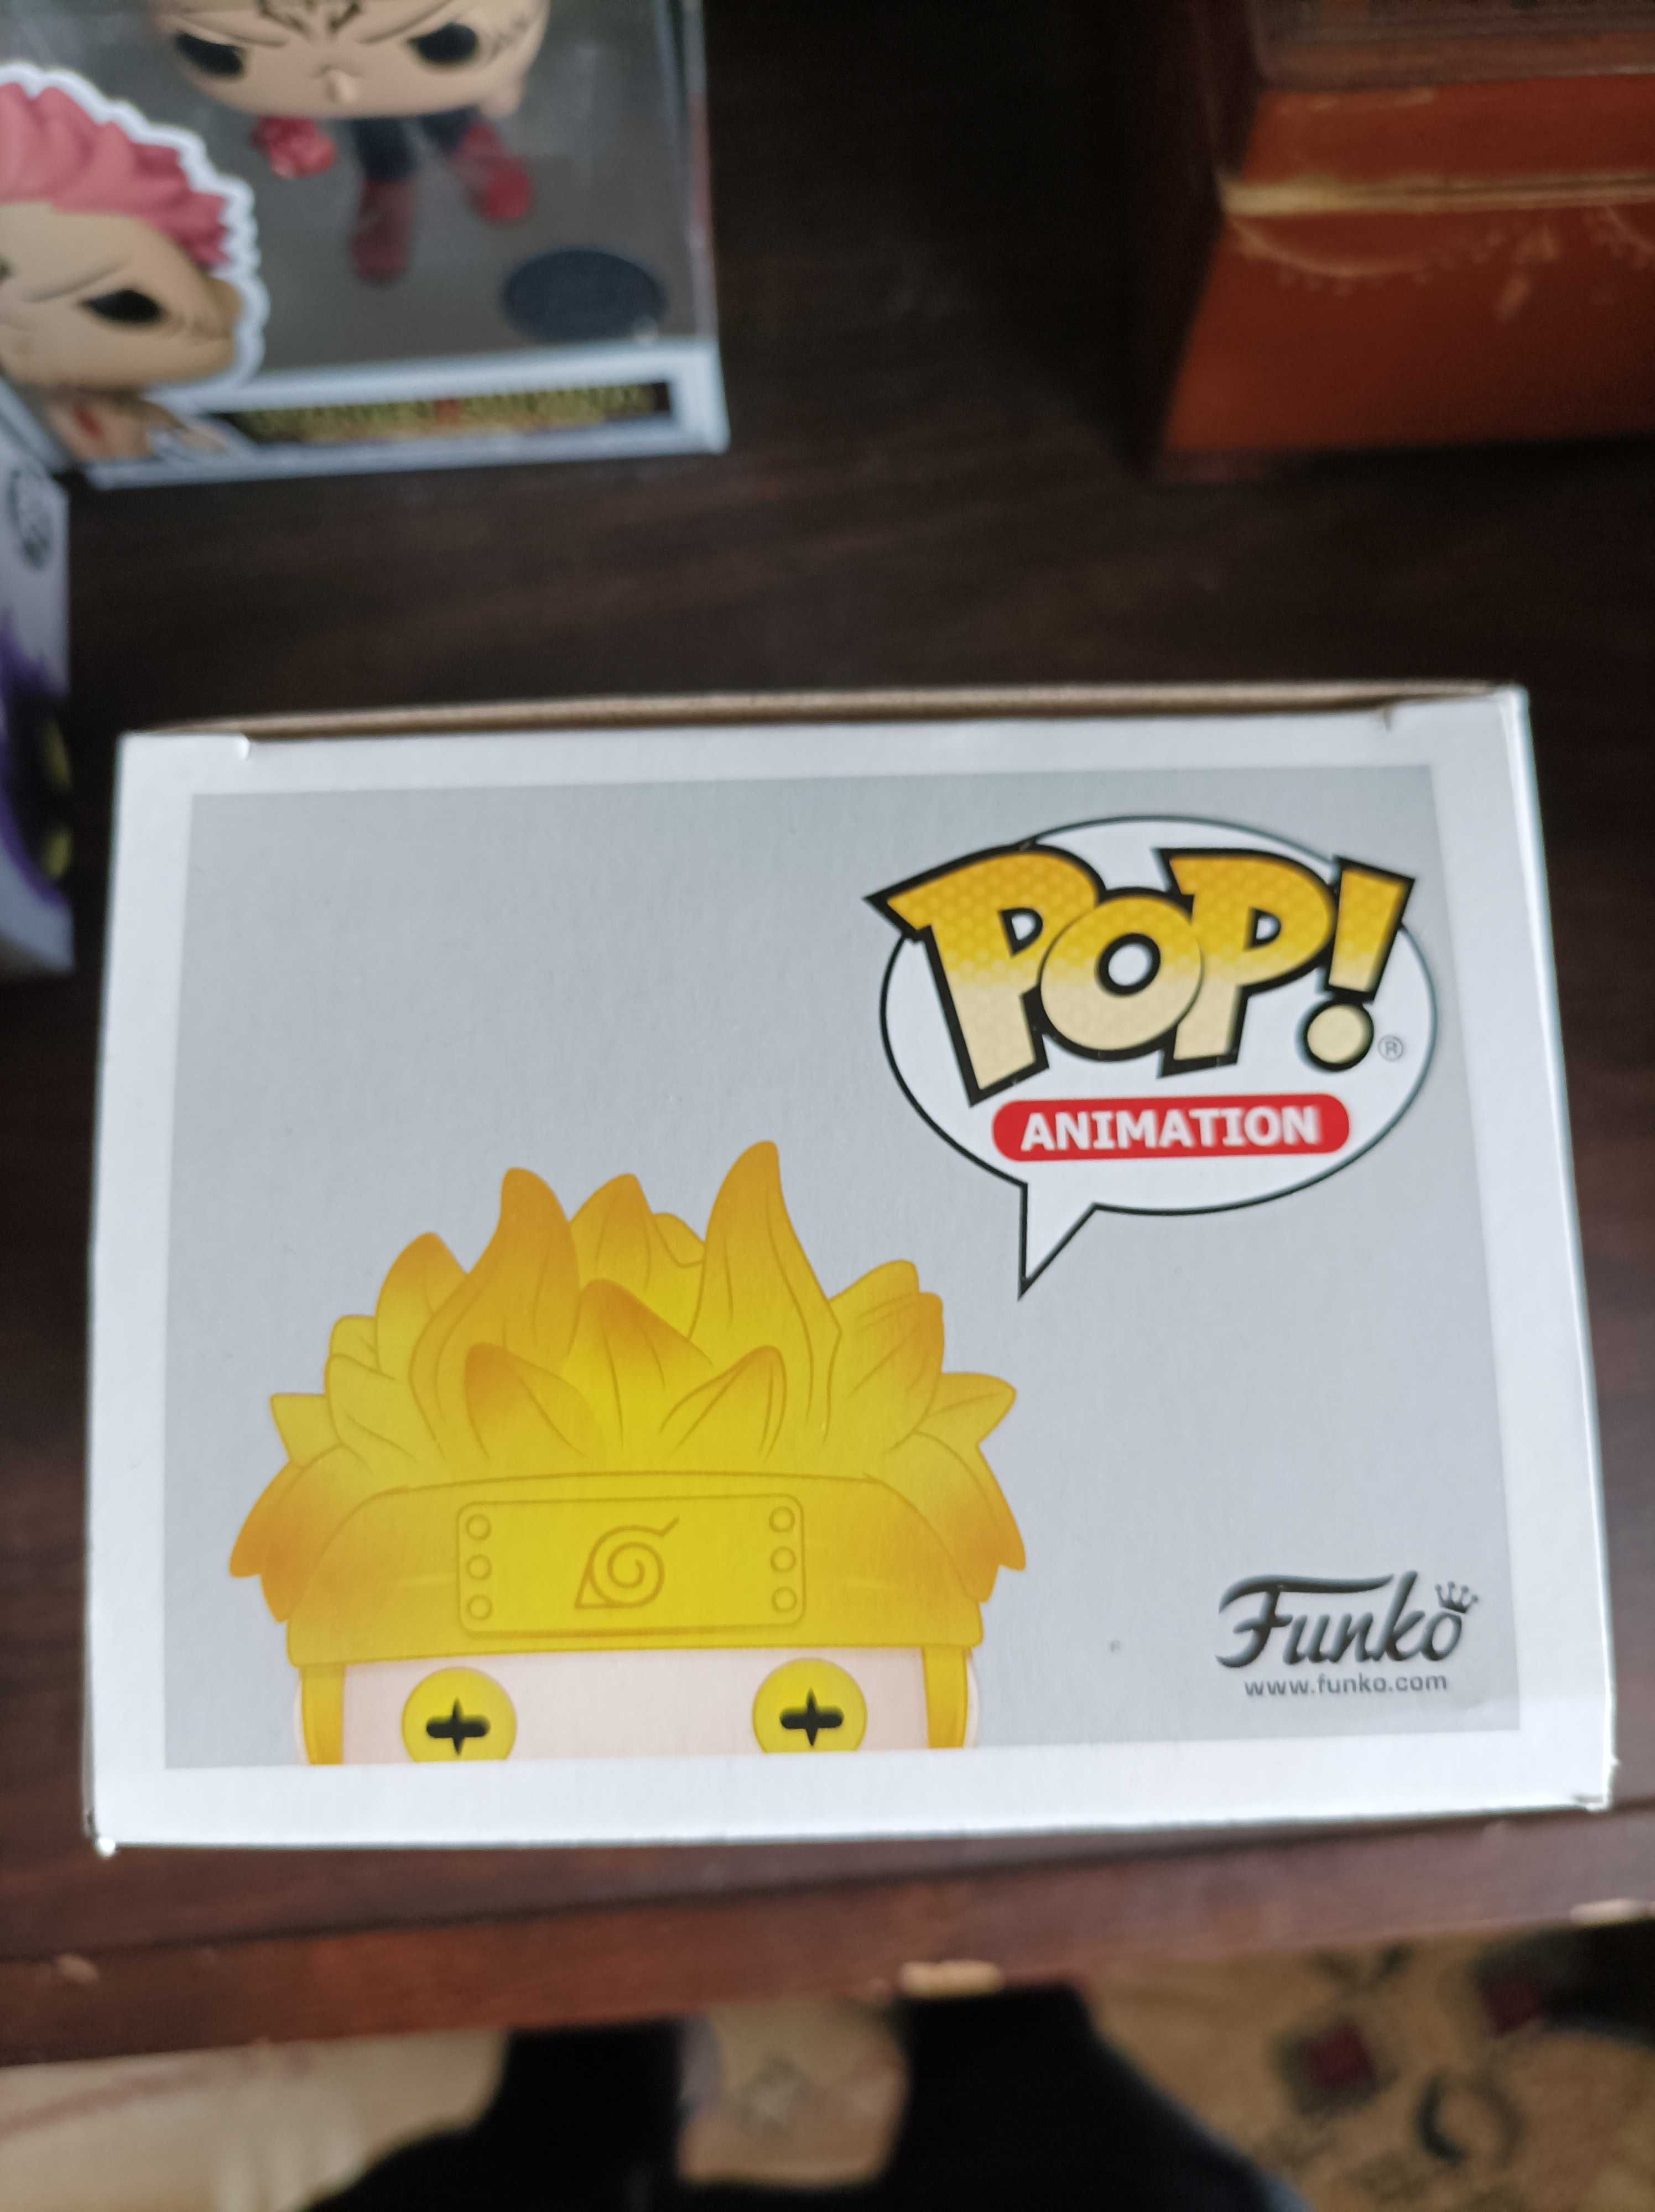 Figurka Funko Pop! Naruto 186 z serii Naruto Shippuden